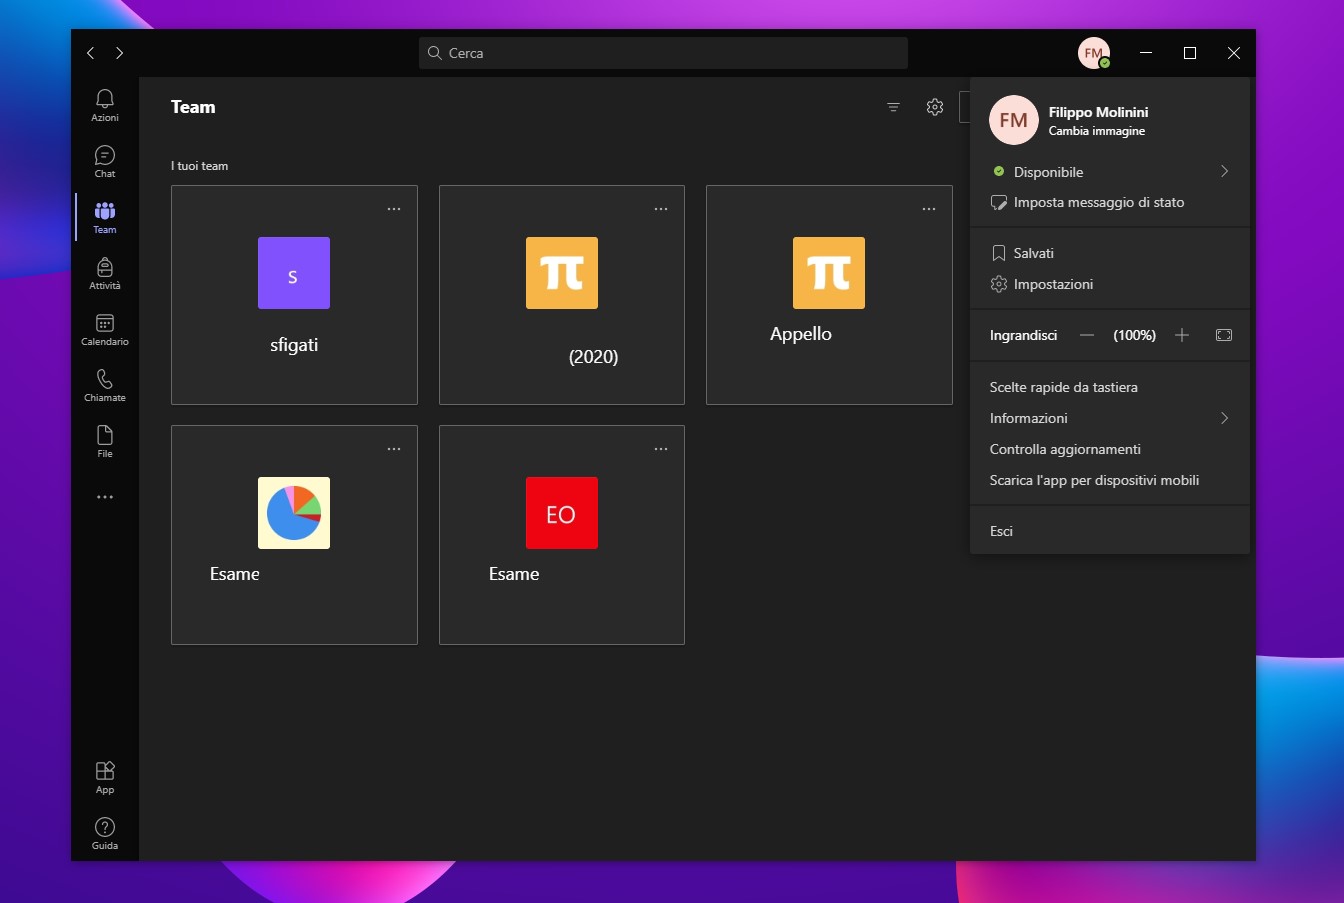 Microsoft Teams - Nuovo tema scuro con icone in stile Fluent Design